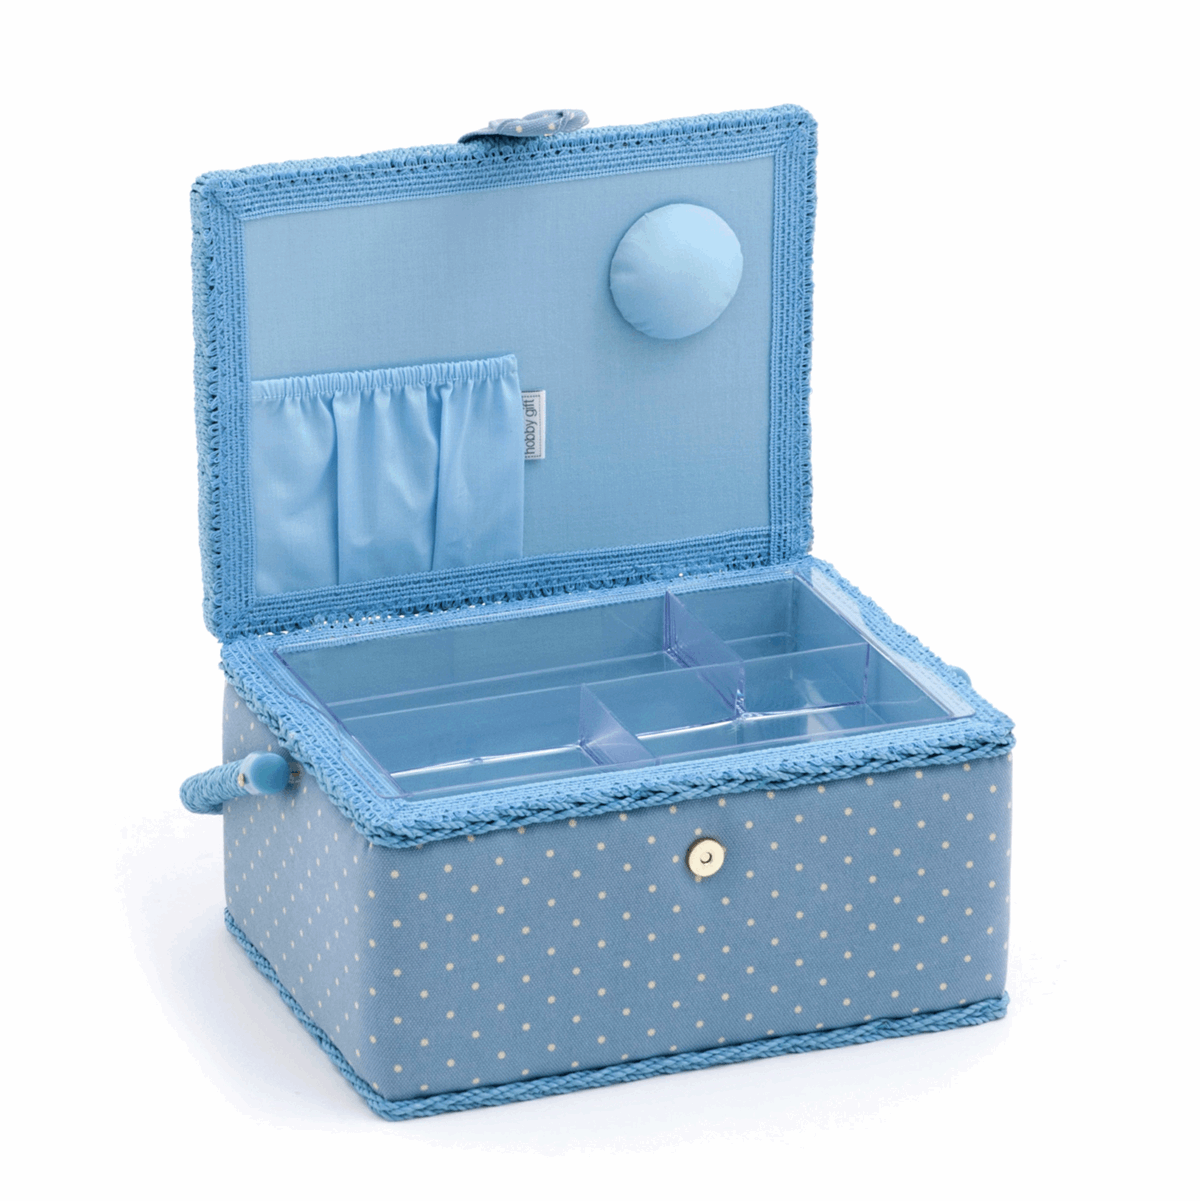 Cornflower Mini Polka Dot Sewing Box - Medium